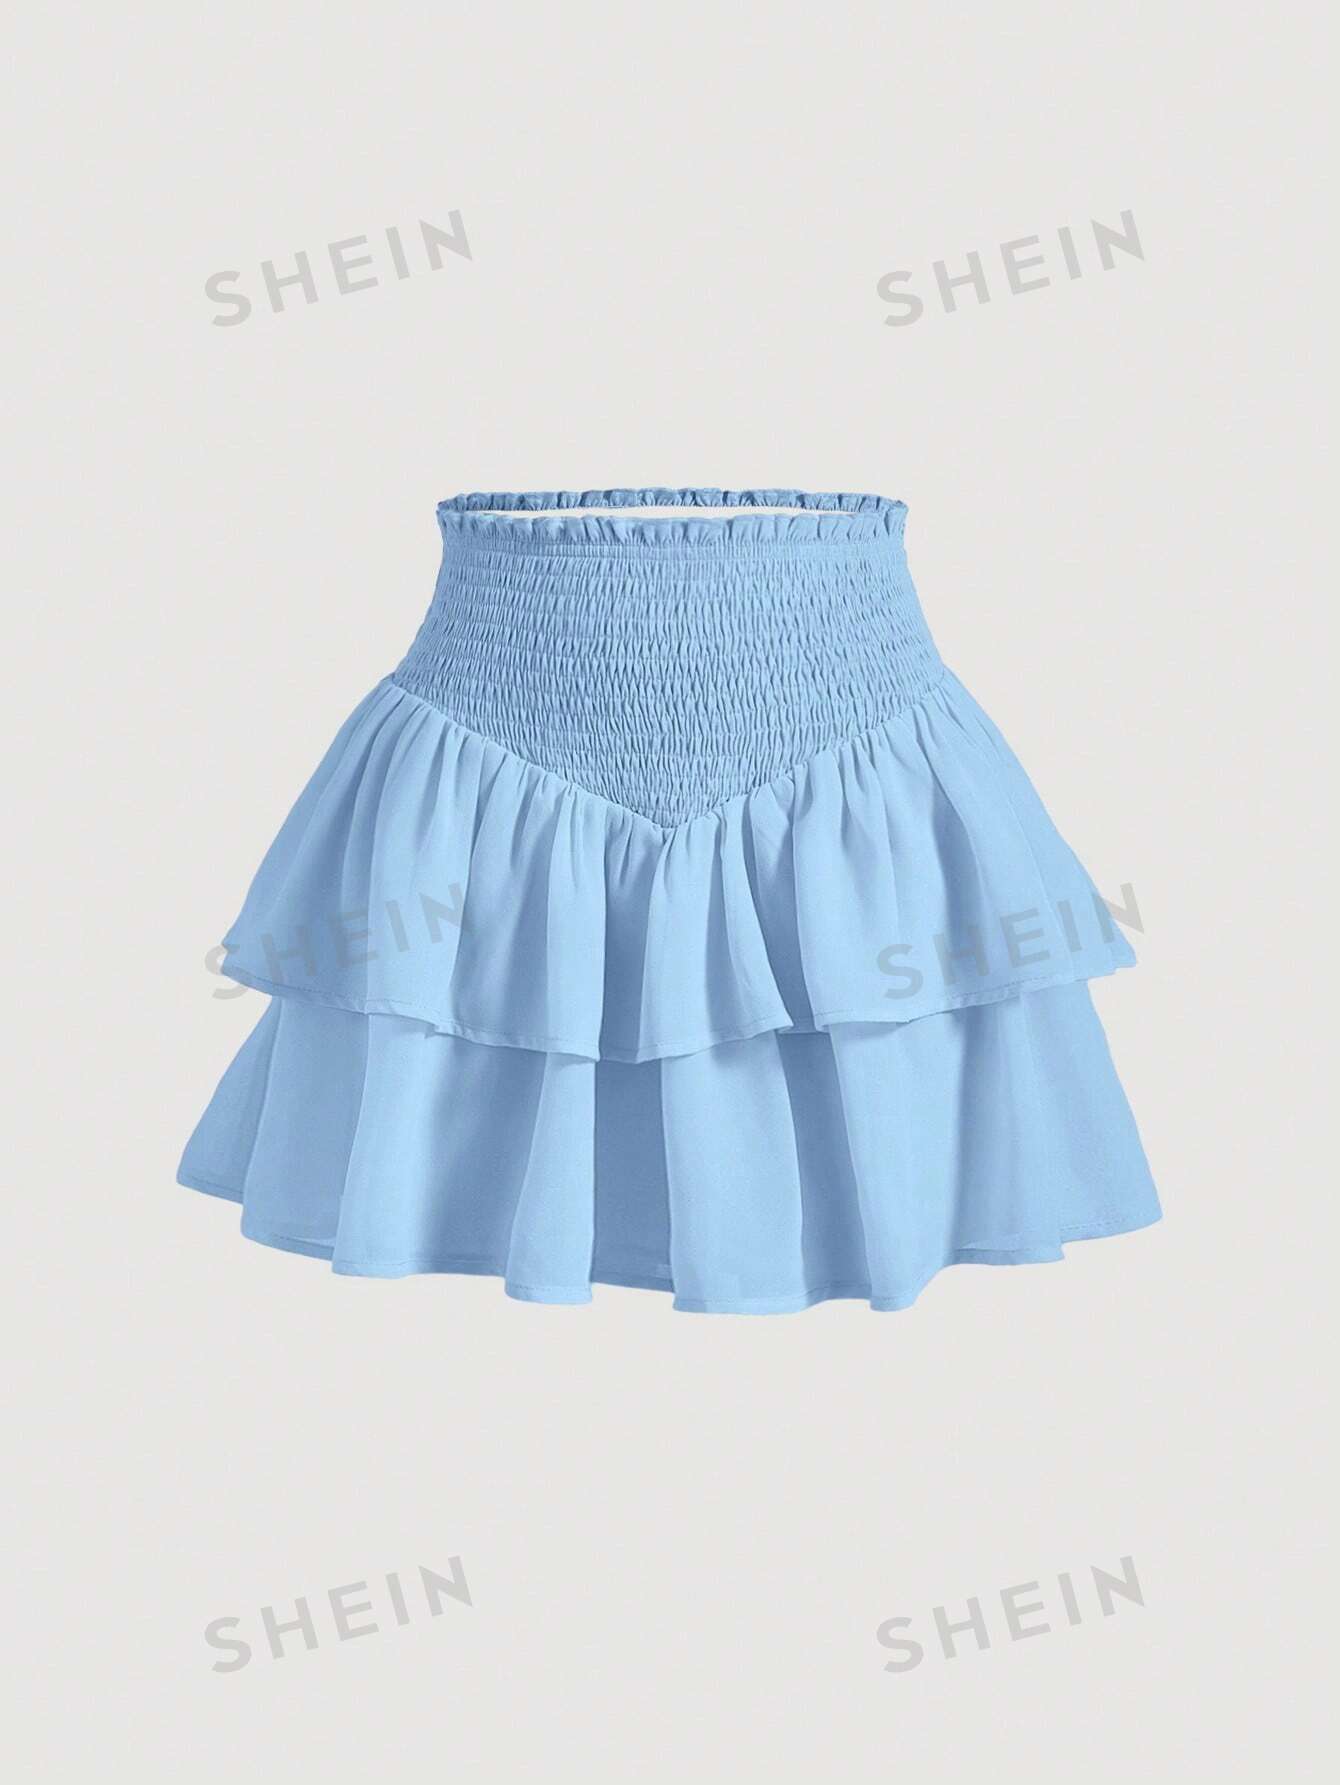 SHEIN MOD SHEIN MOD женская двухслойная мини-юбка с асимметричным подолом и рюшами и присборенной талией, голубые shein mod белая кружевная декорированная асимметричная юбка с рюшами по подолу белый